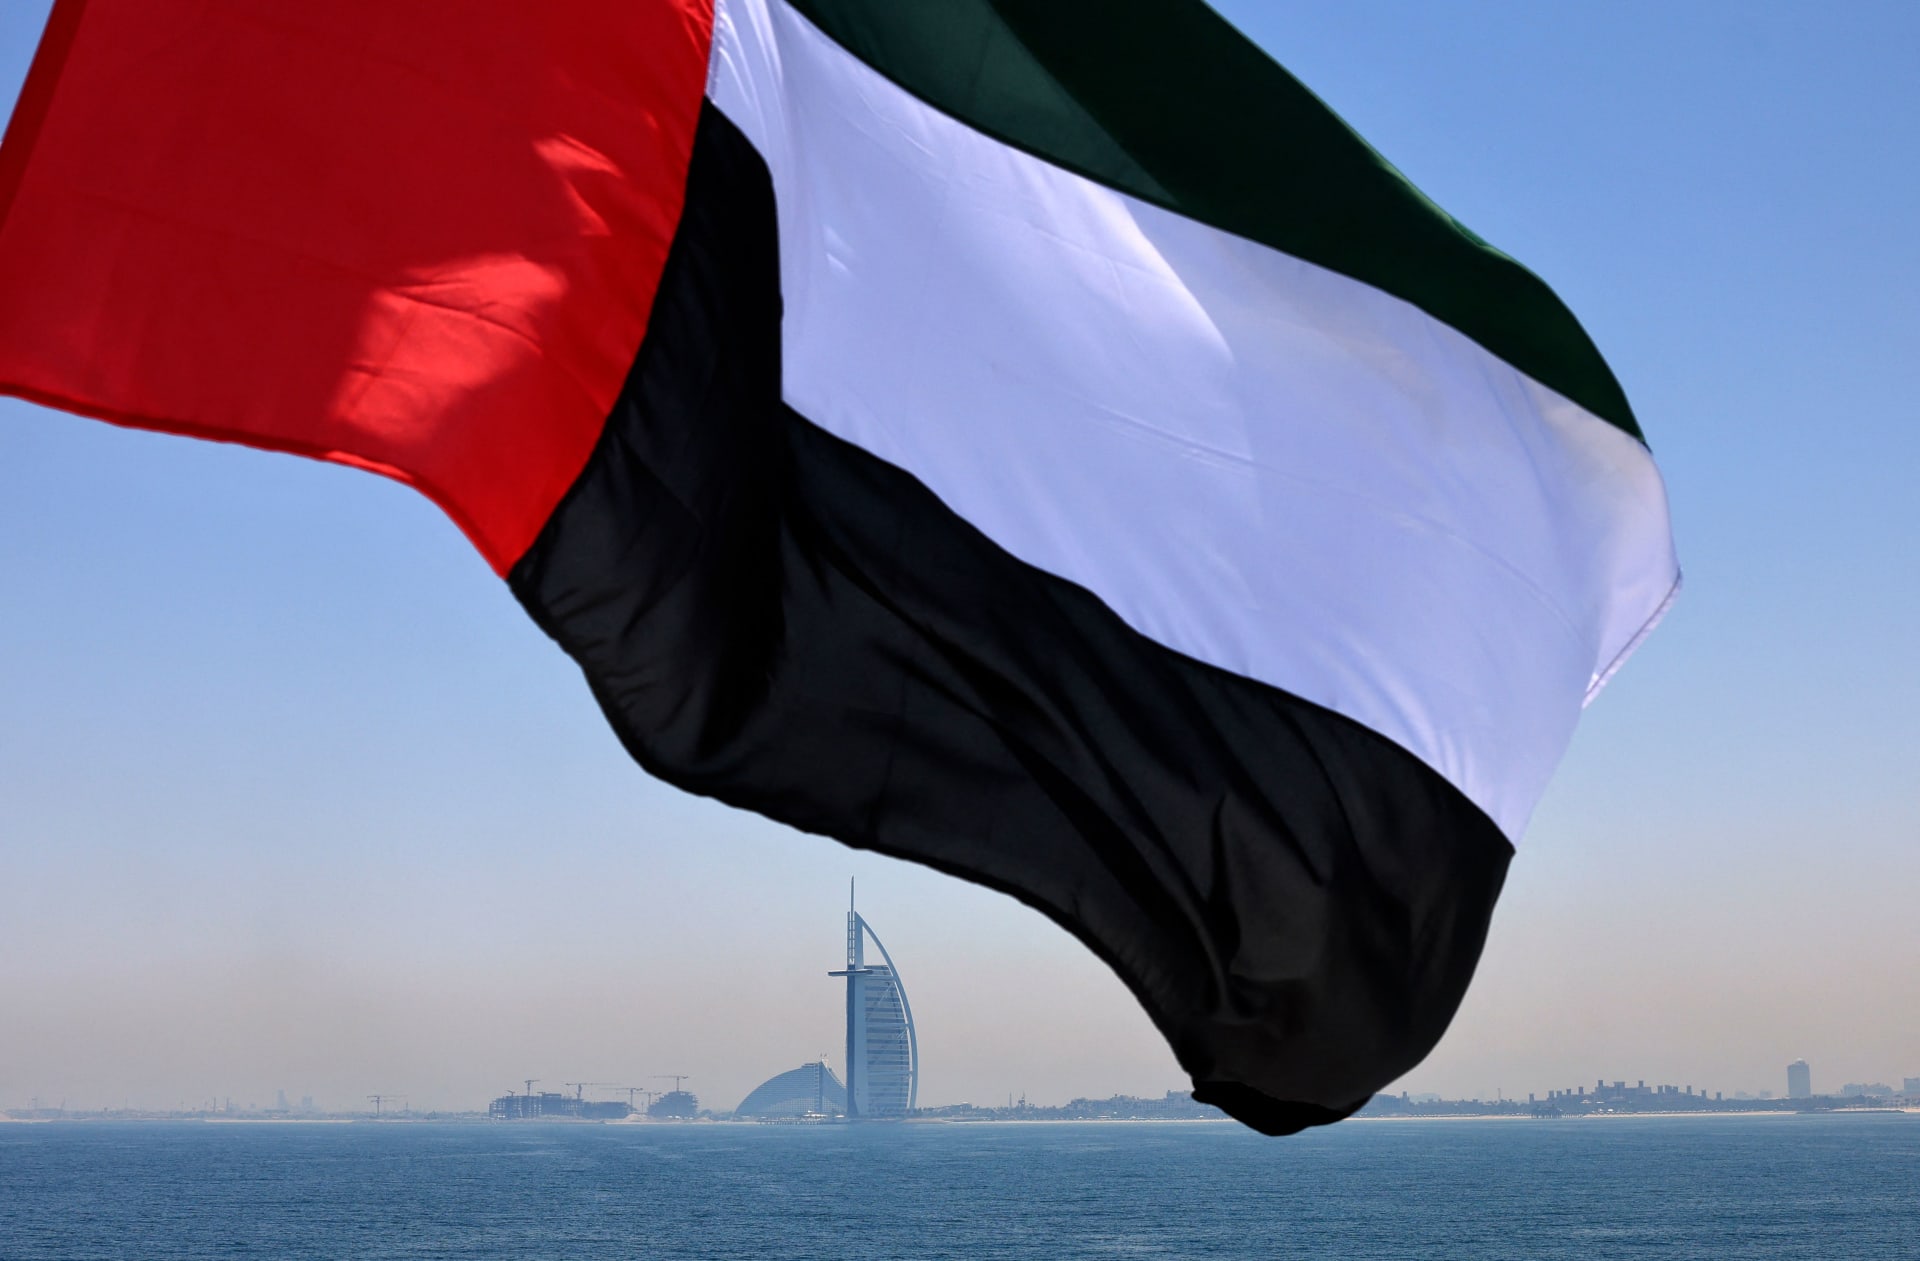 علم إماراتي يرفرف فوق مرسى دبي مع فندق برج العرب في الخلفية، في 3 يونيو 2021 